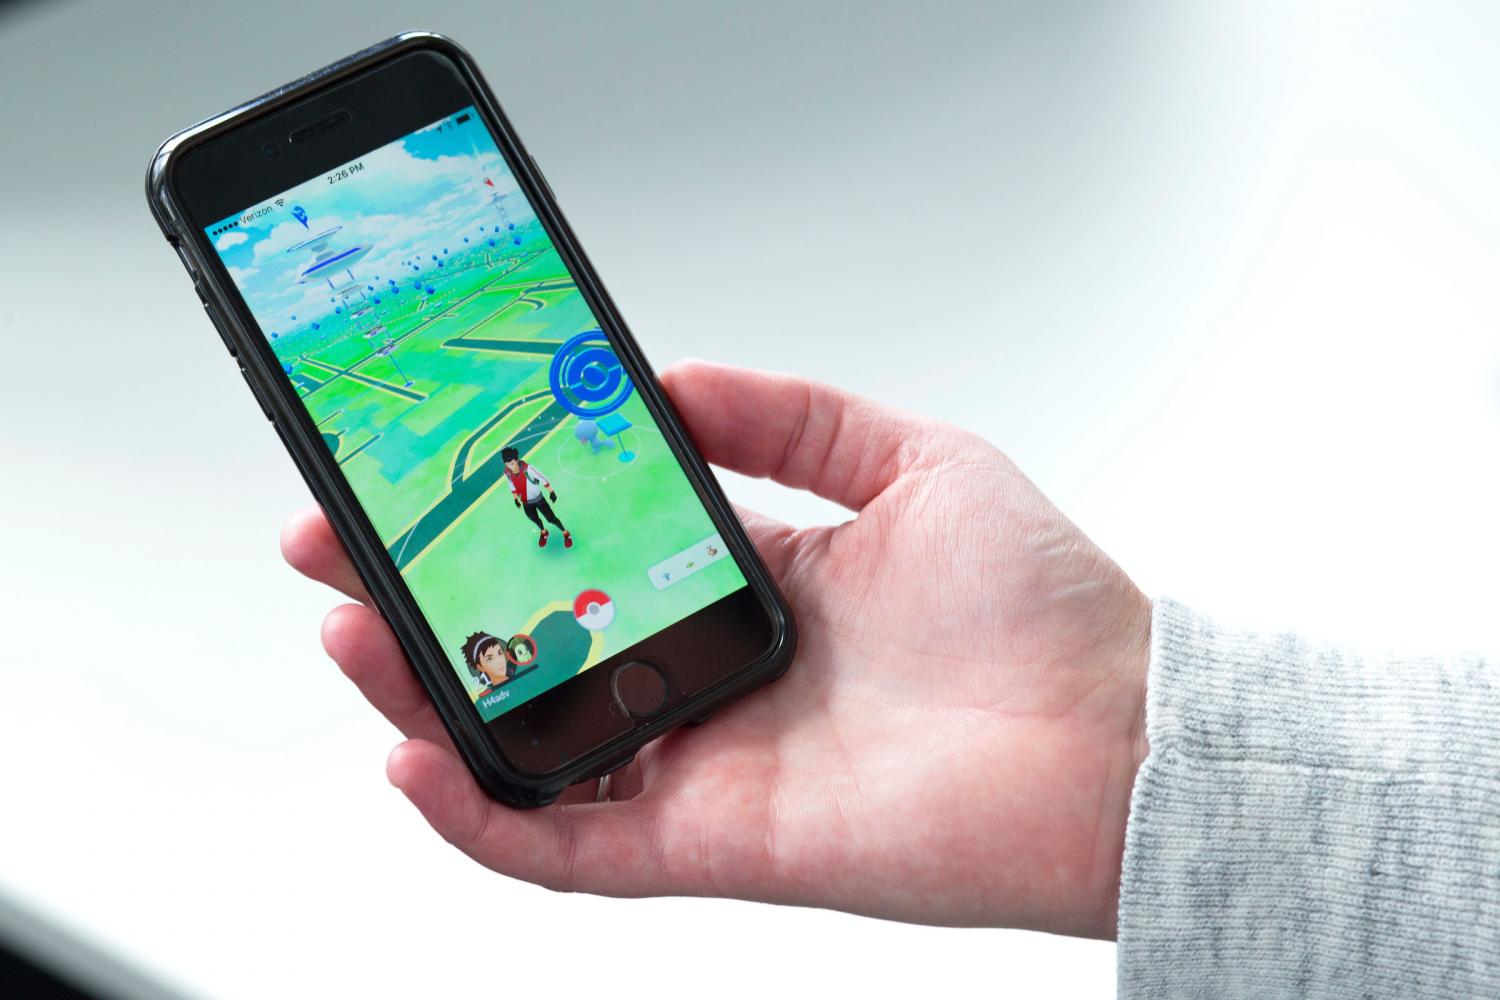 Study: Pokémon Go Helps Students to Develop Skills